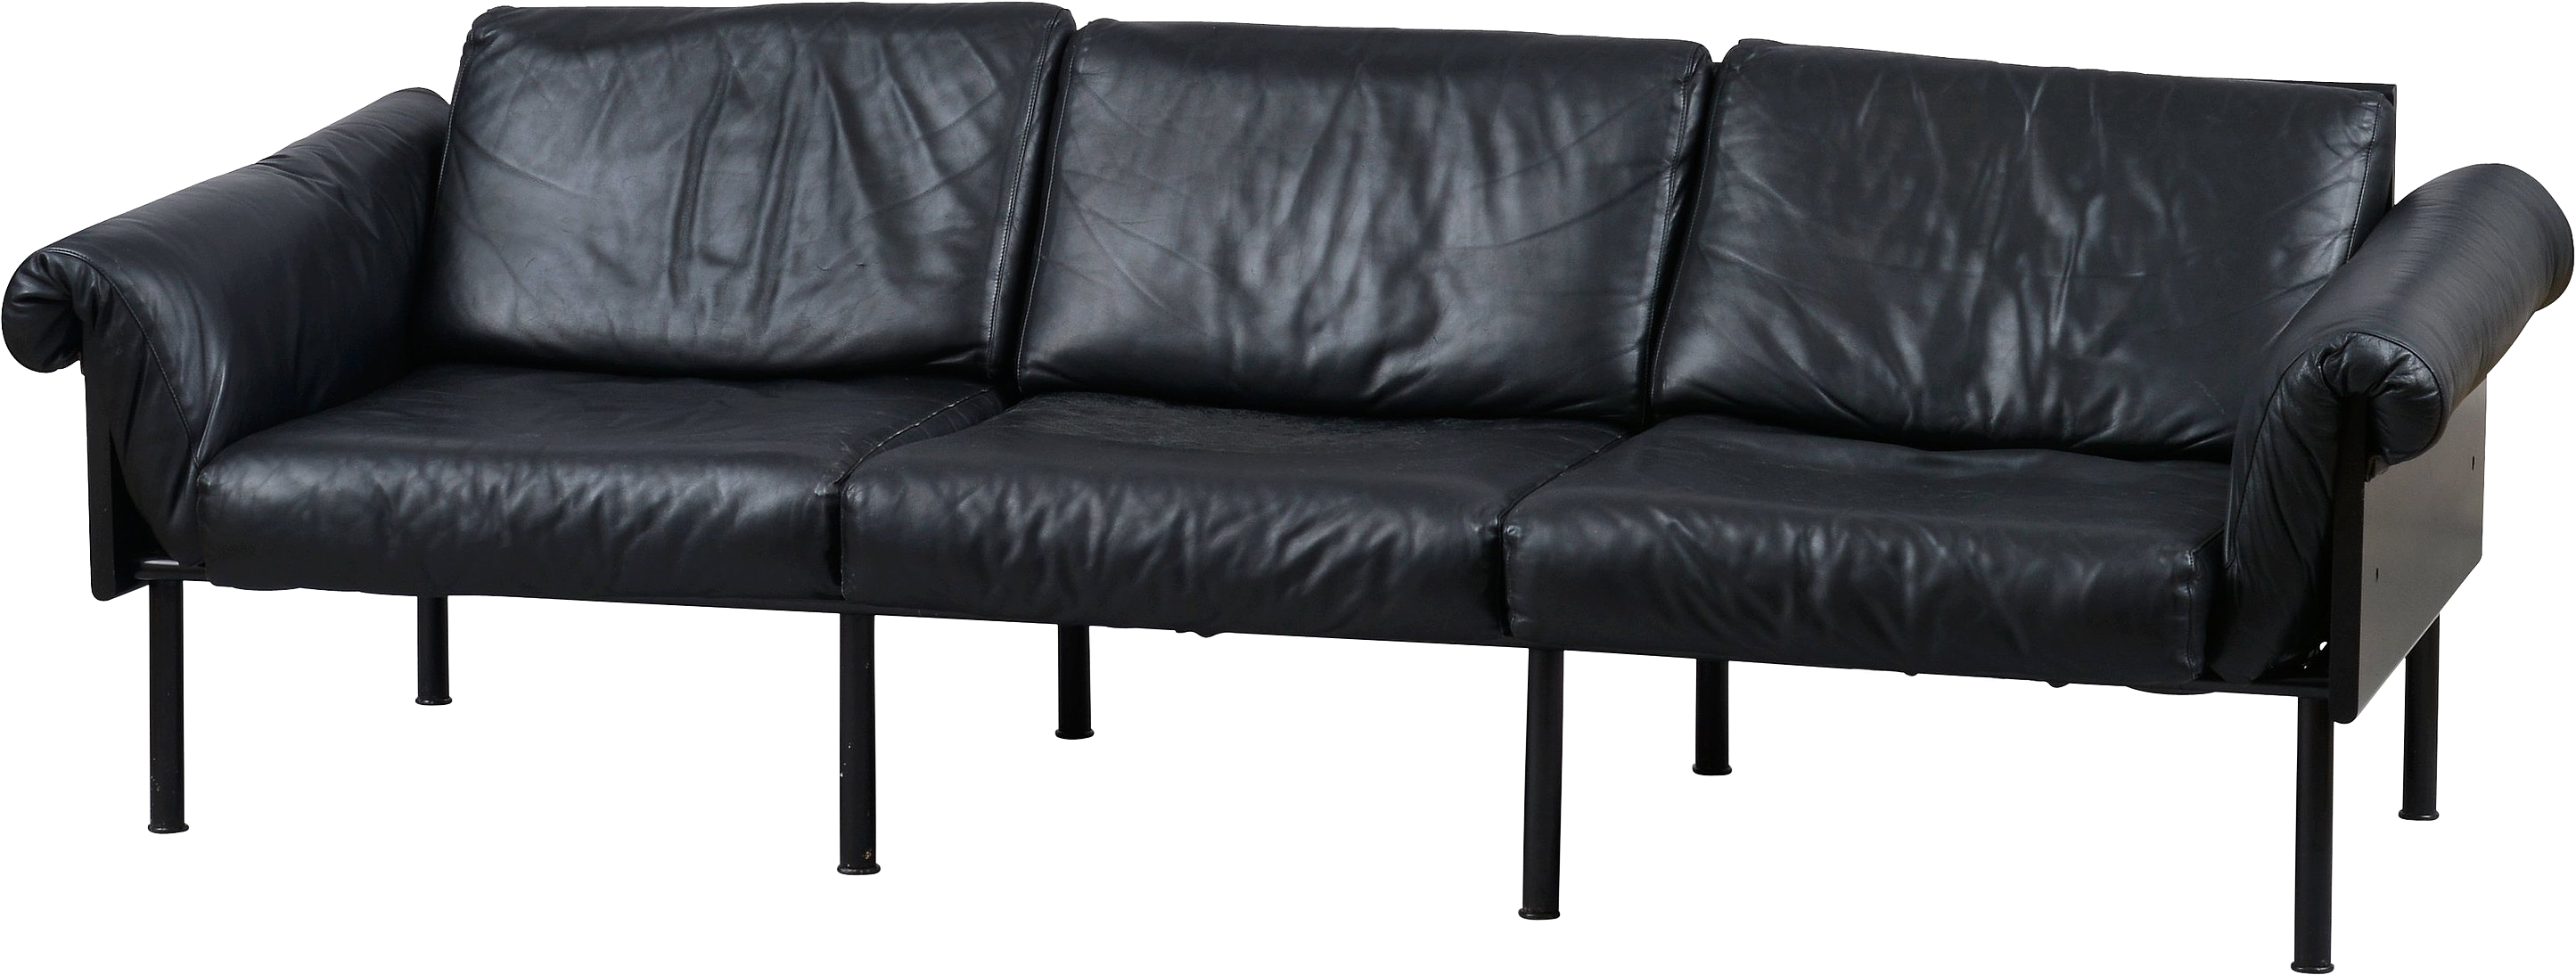 Ghế sofa màu đen